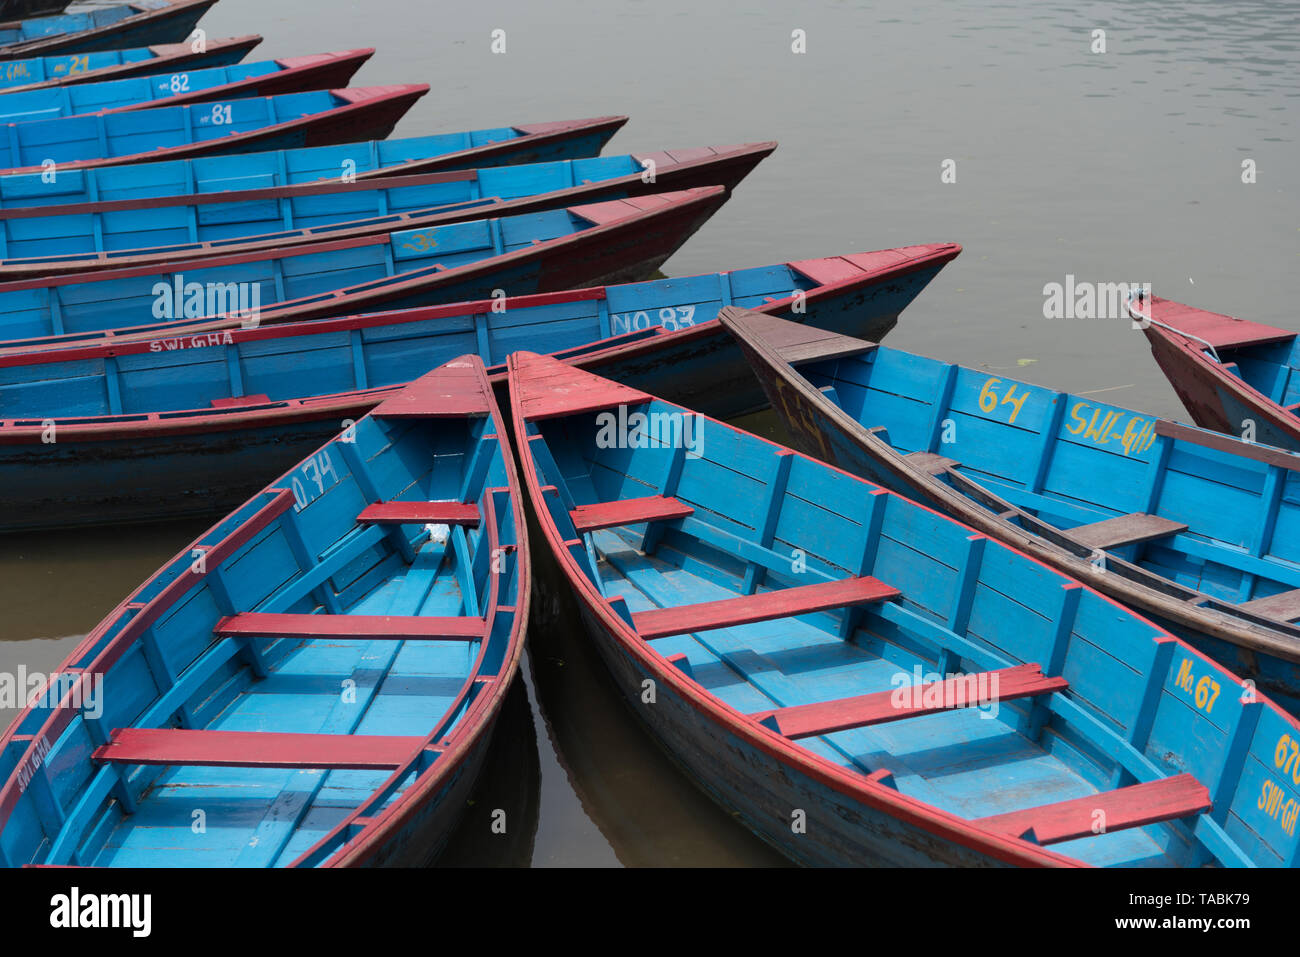 Hohen winkel Blick auf viele rote und blaue Zeile Boote an einem Dock. Stockfoto